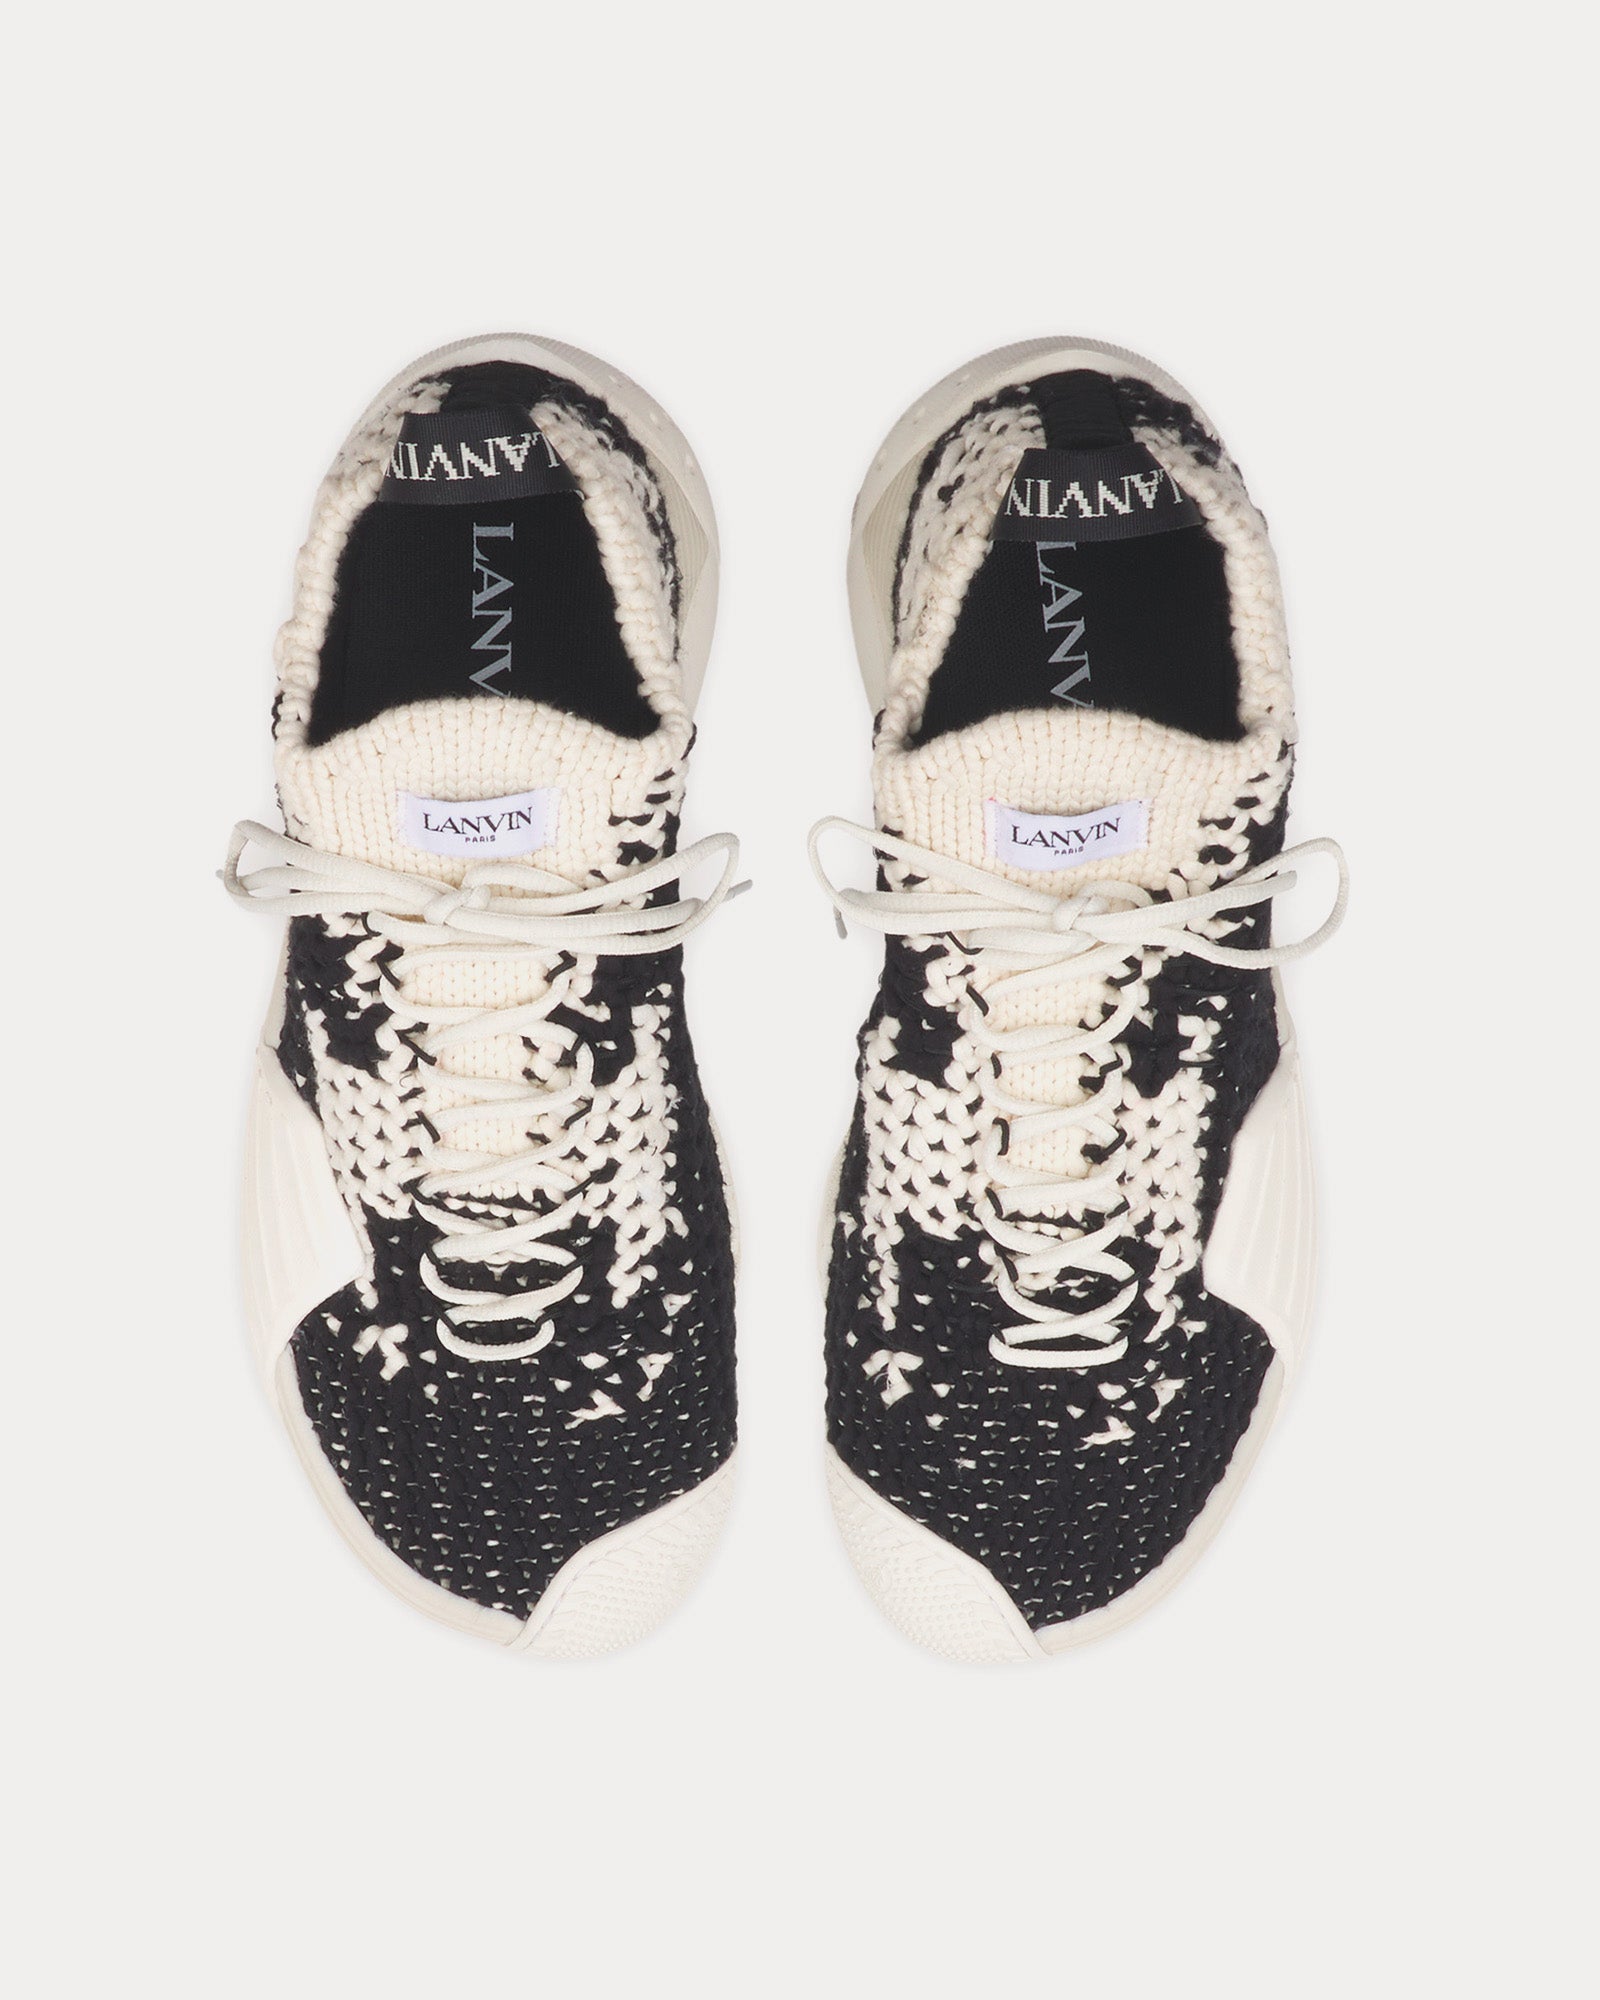 Lanvin - Flash-Knit Cotton Ecru / Black Low Top Sneakers